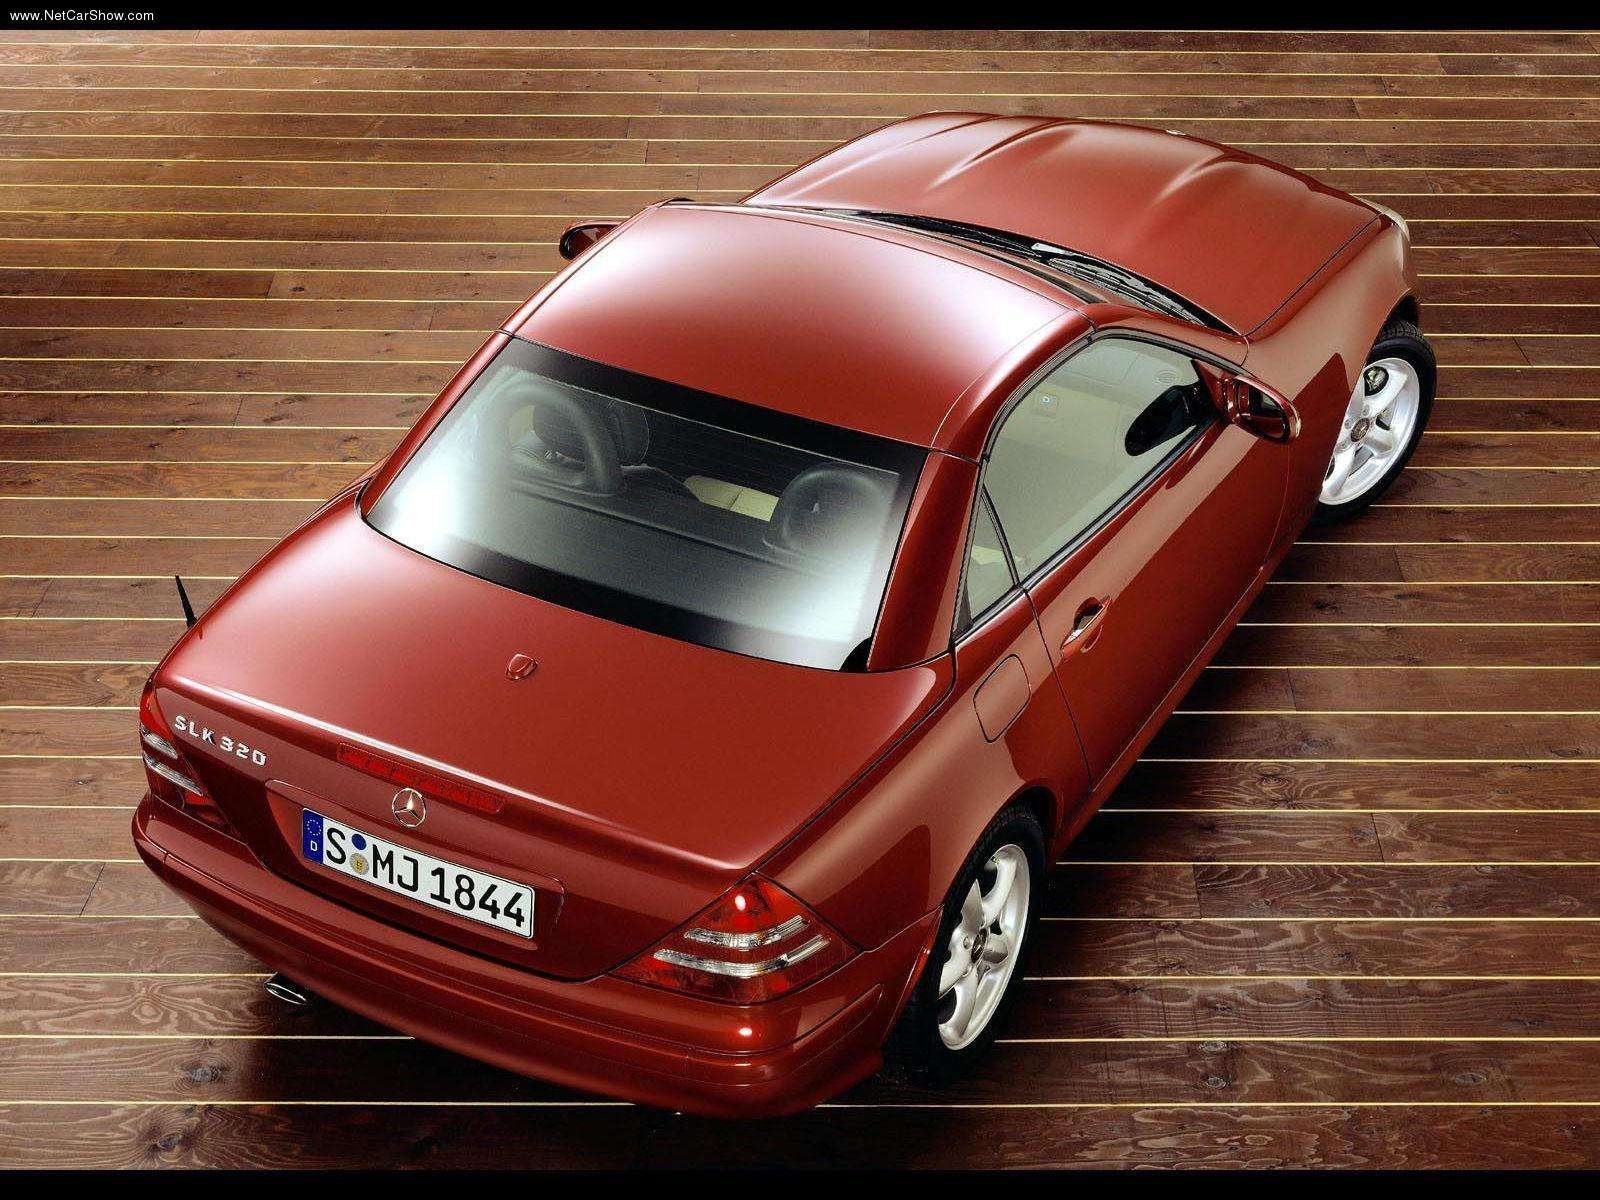 mercedes benz, Slk 320, Roadster, Cars, 2000, Kompressor Wallpaper